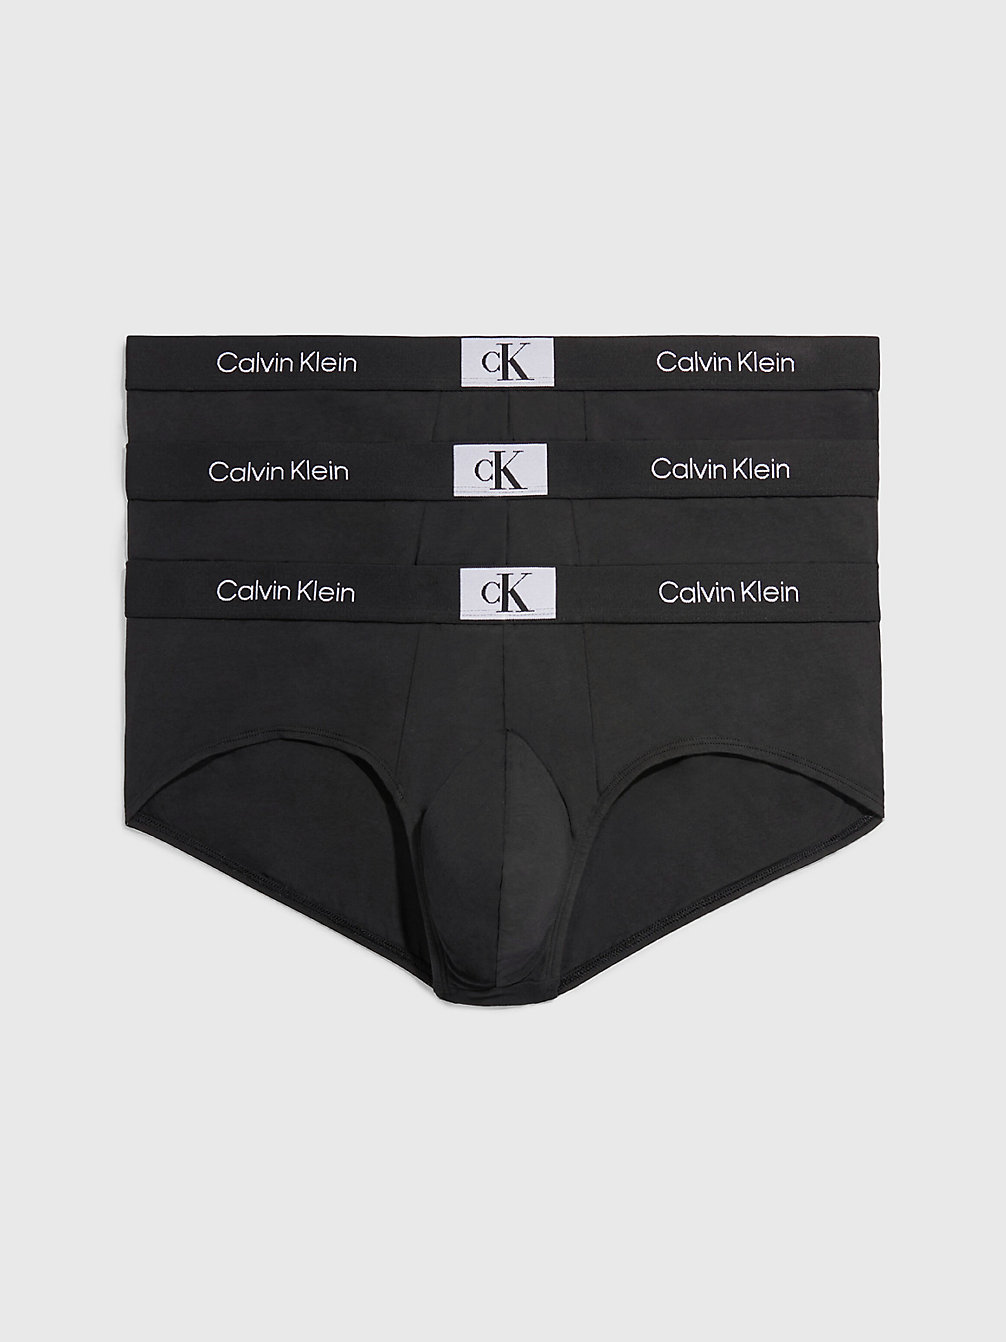 BLACK/BLACK/BLACK > Grote Maat 3-Pack Slips - Ck96 > undefined heren - Calvin Klein